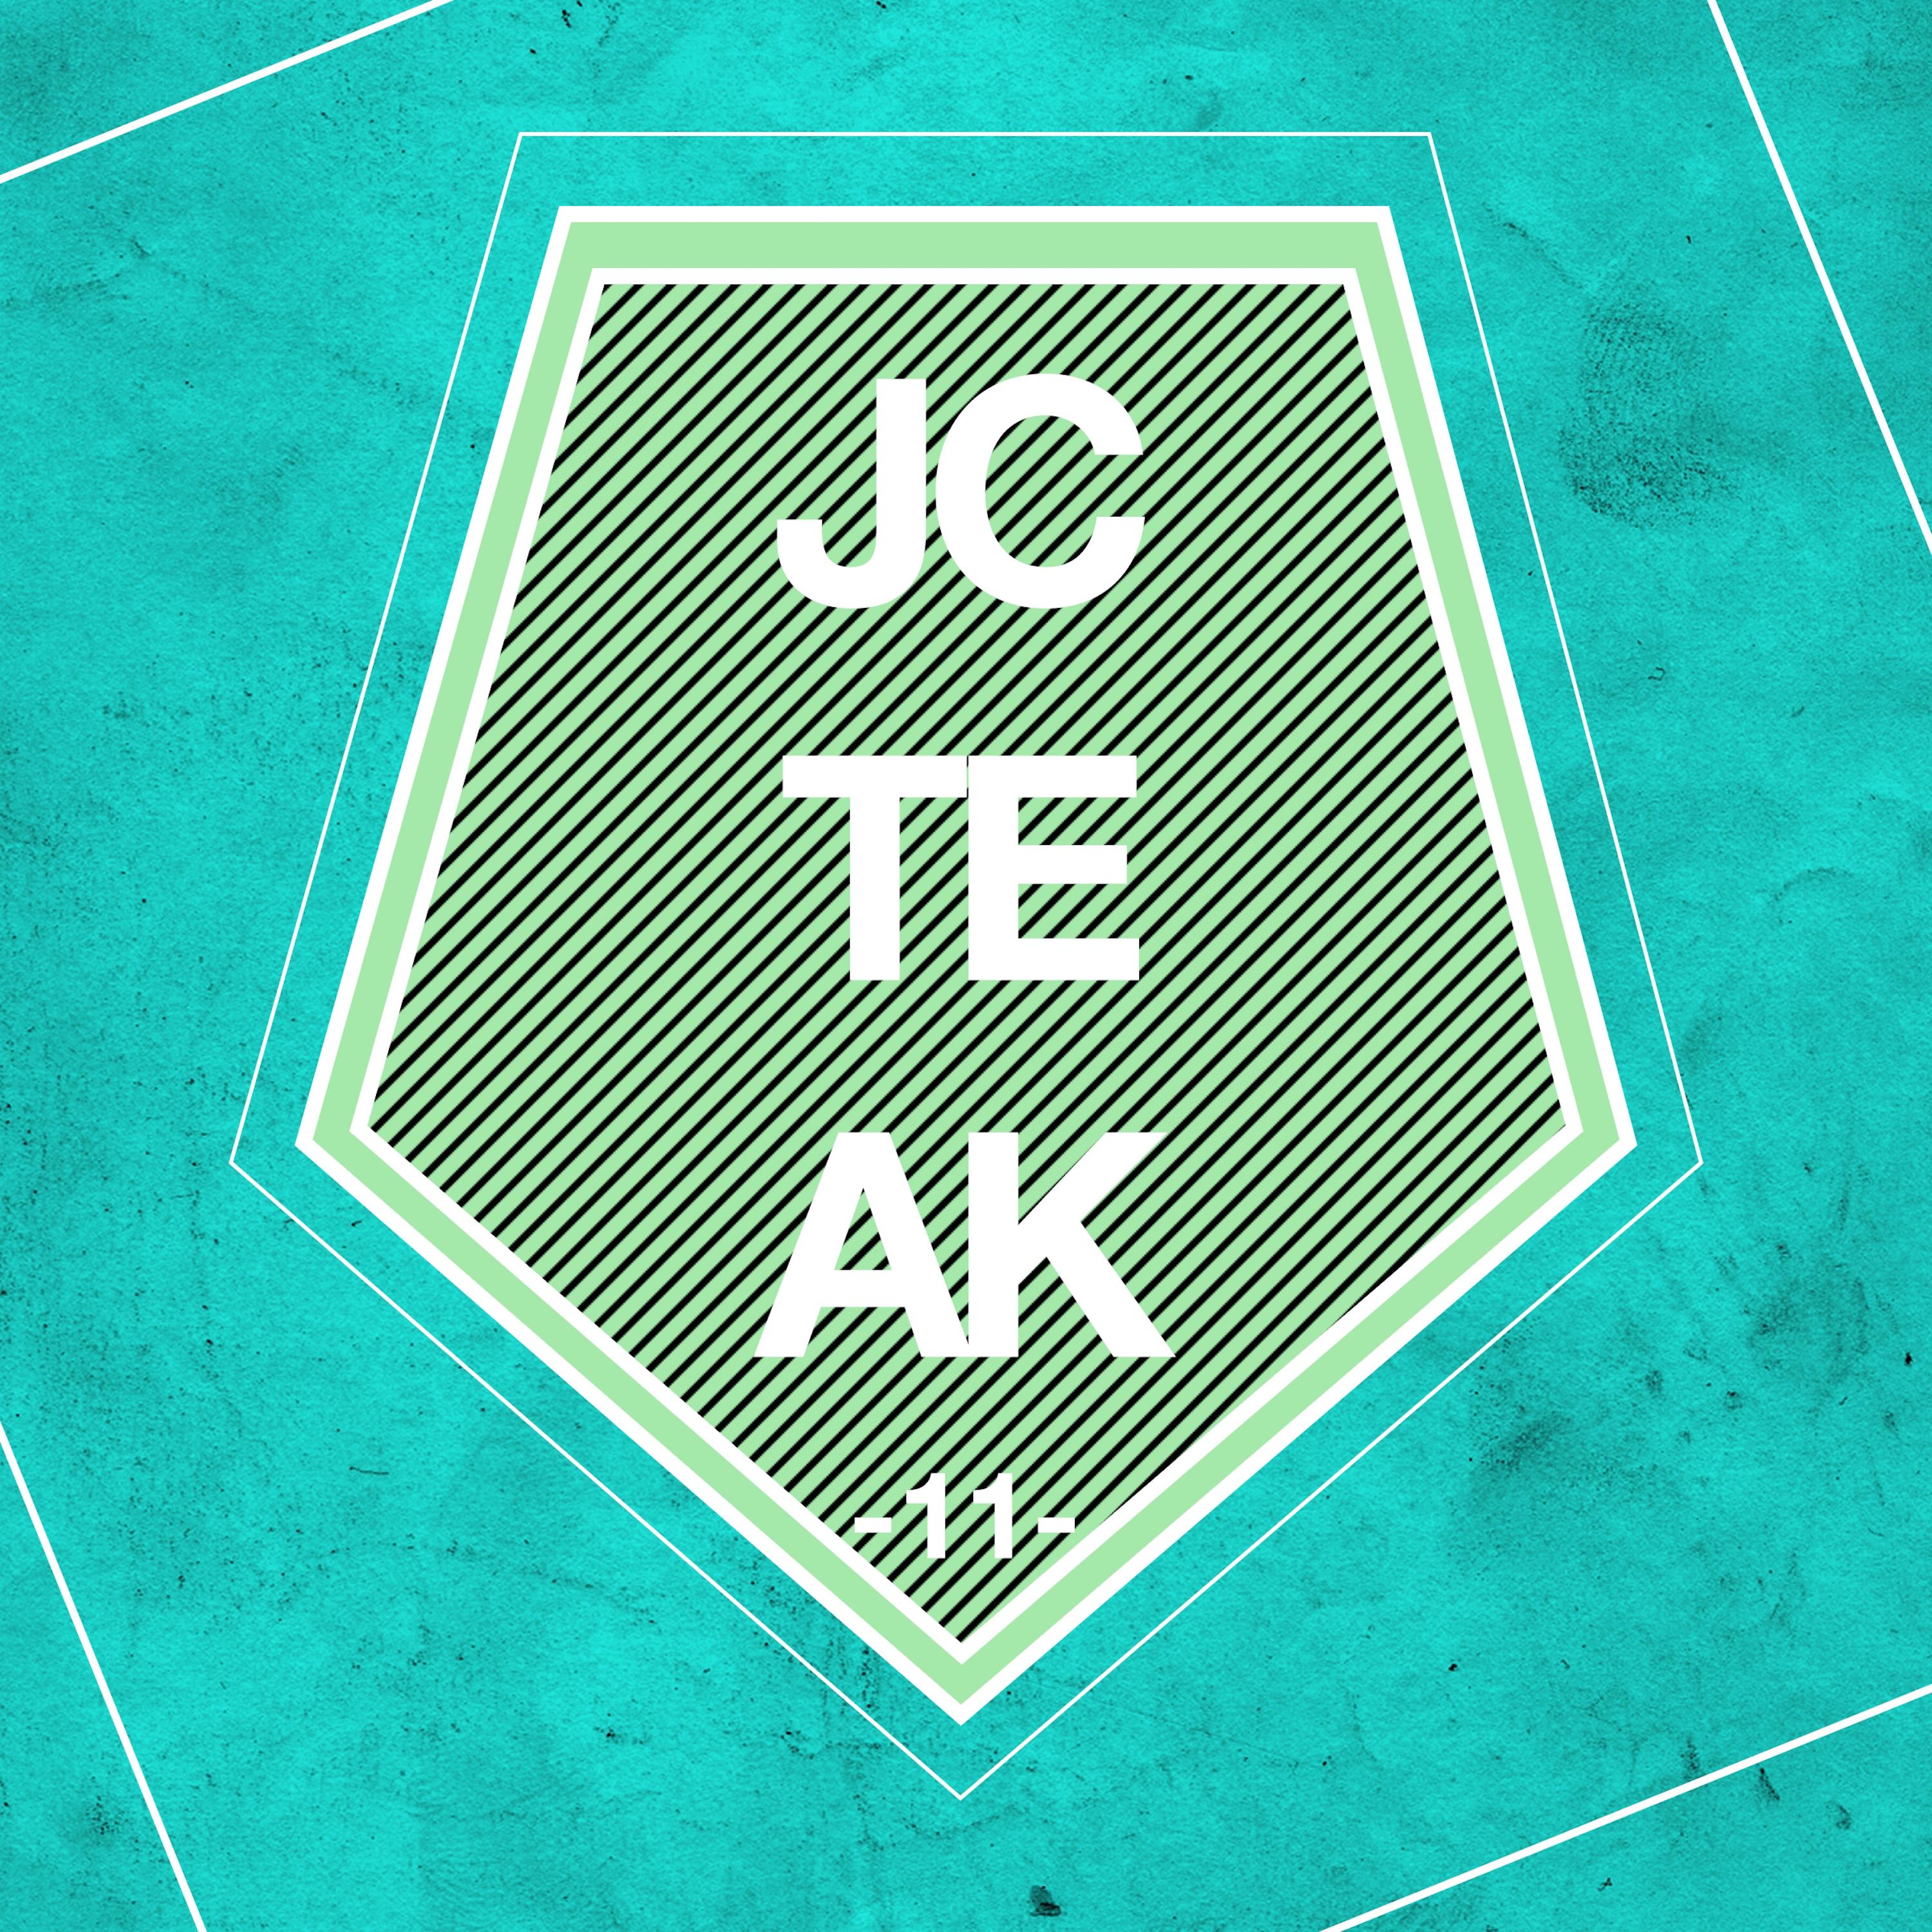 JCTEAK, Vol. 11